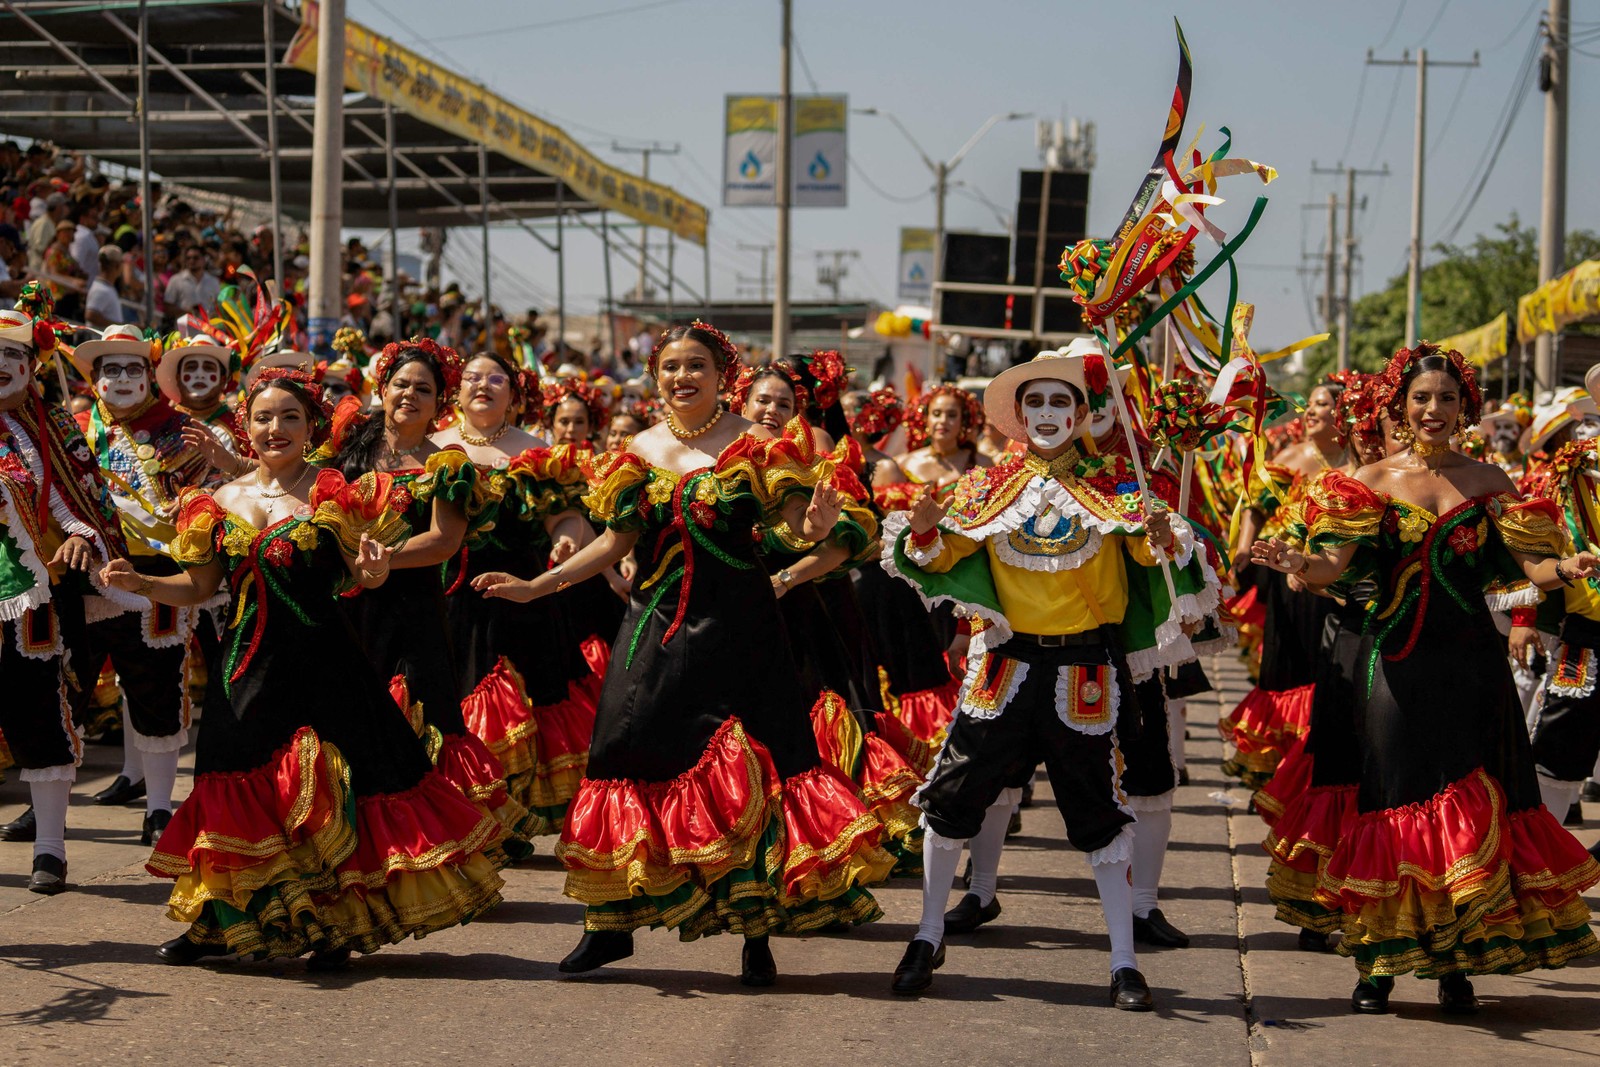 Registros apontam que o carnaval é festejado em Barranquilla, na Colômbia, desde 1829 — Foto: Charlie Cordero / AFP